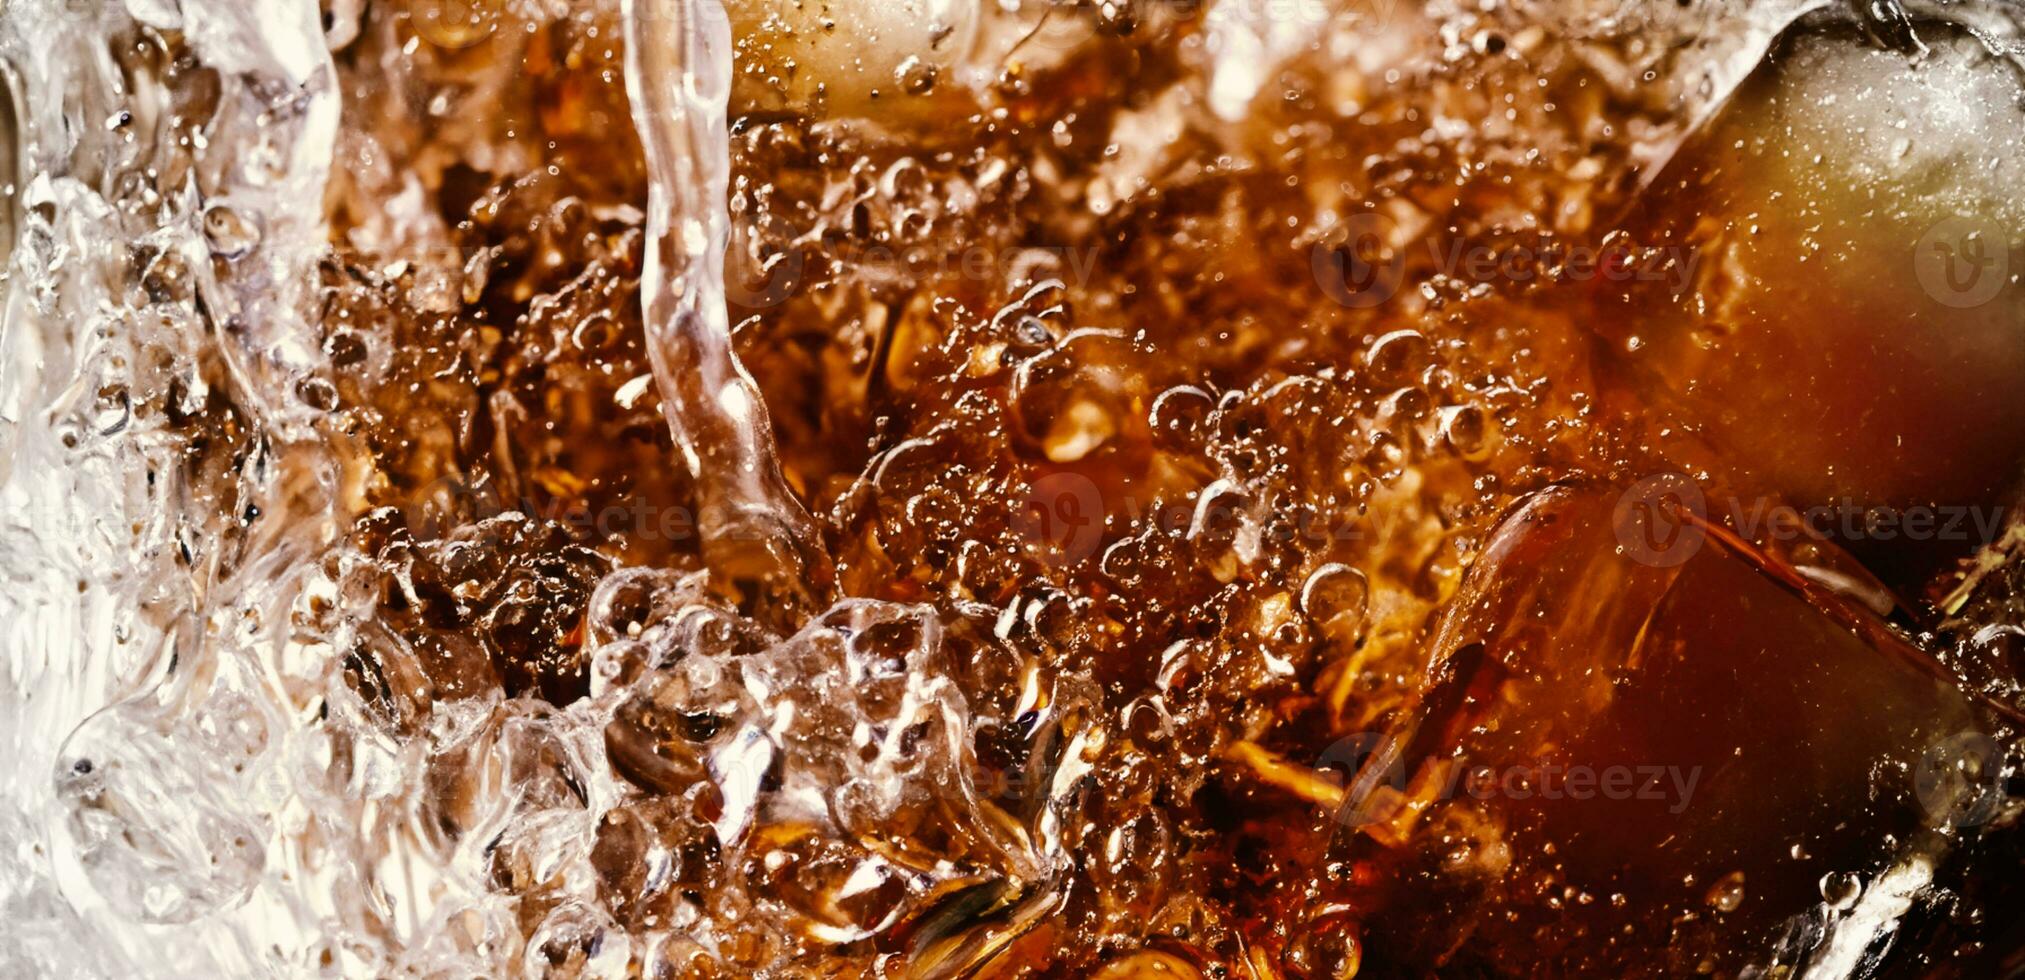 planschen von Cola und Eis. Cola Limonade und Eis planschen Sprudeln oder schwebend oben zu oben von Oberfläche. schließen oben von Eis im Cola Wasser. Textur von Karbonat trinken mit Luftblasen im Glas. kalt trinken Hintergrund foto